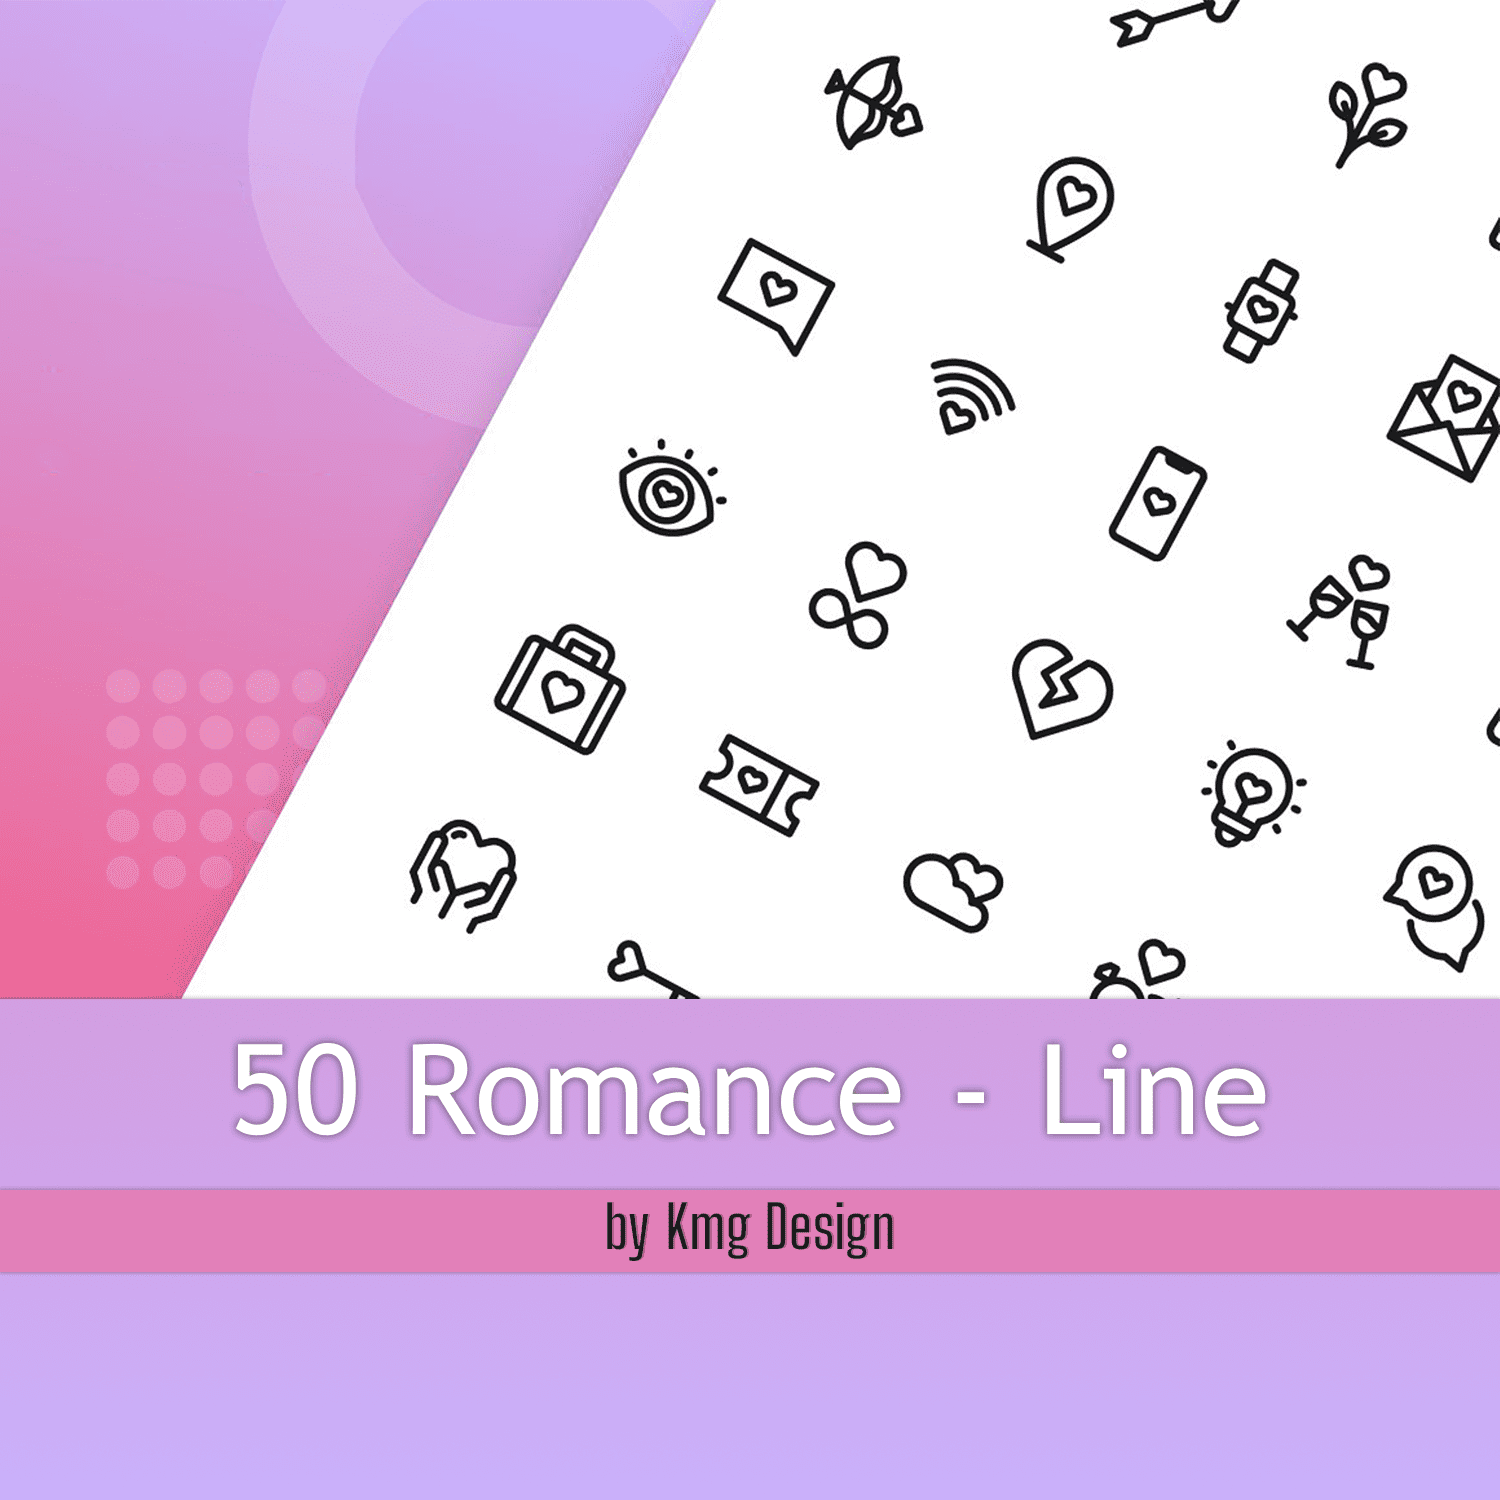 50 Romance - Line.